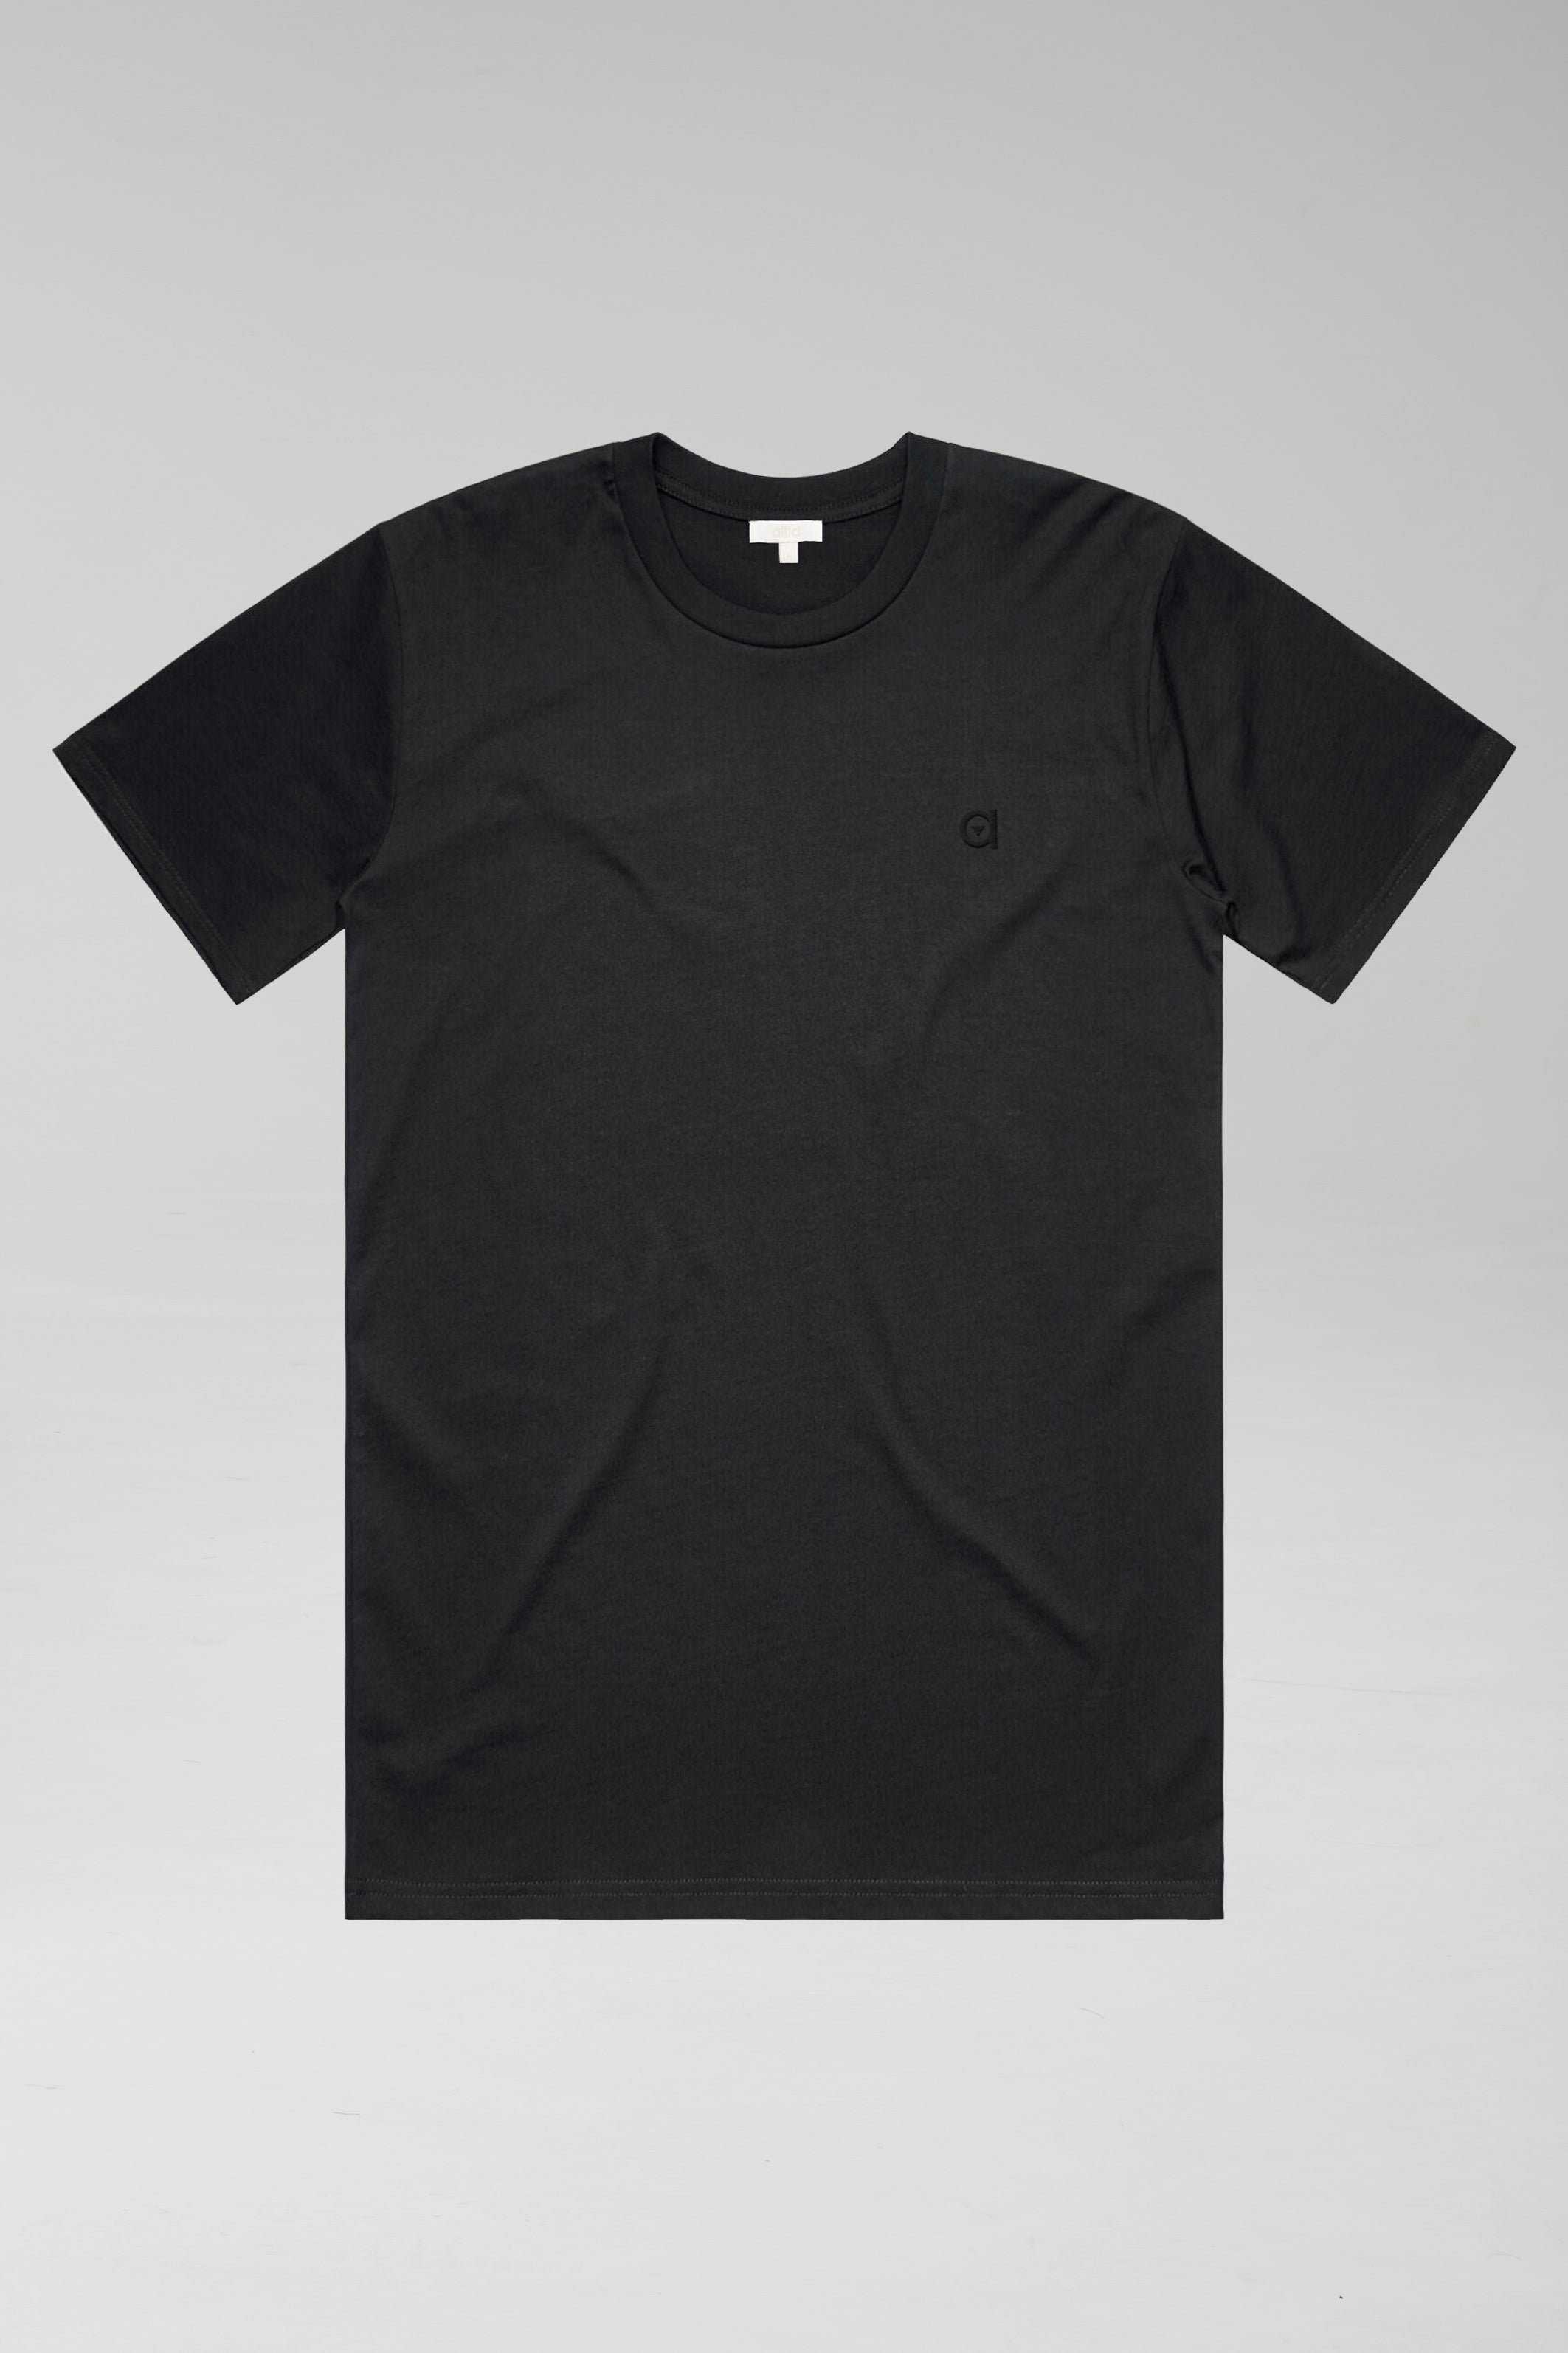 black low carbon t-shirt